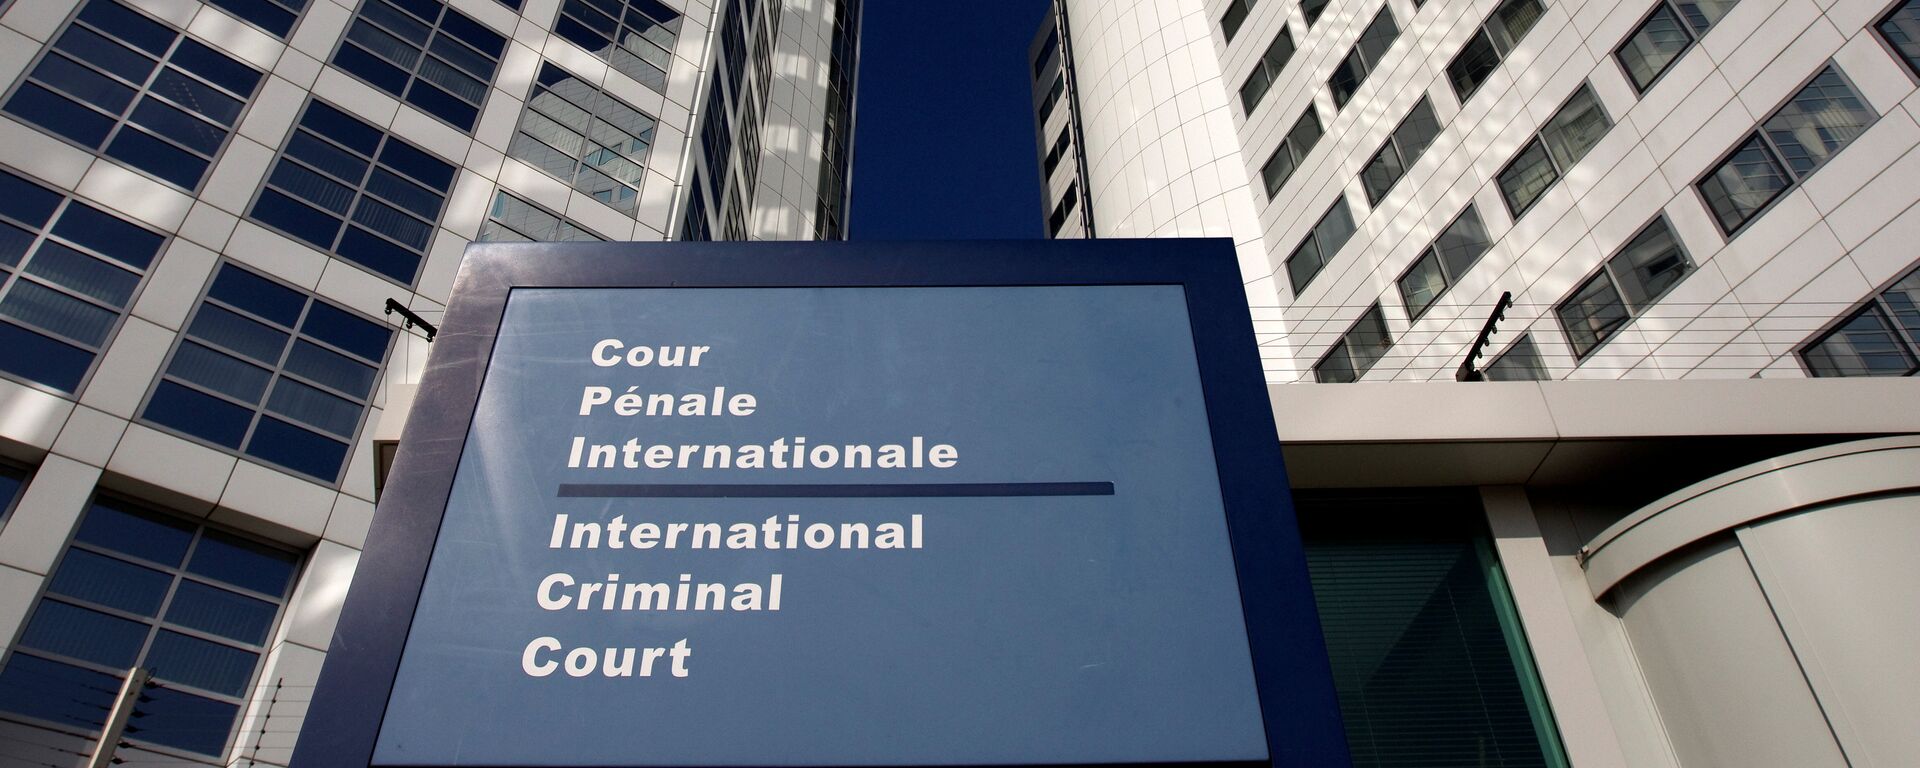 Corte Penal Internacional en la Haya - Sputnik Mundo, 1920, 03.11.2021